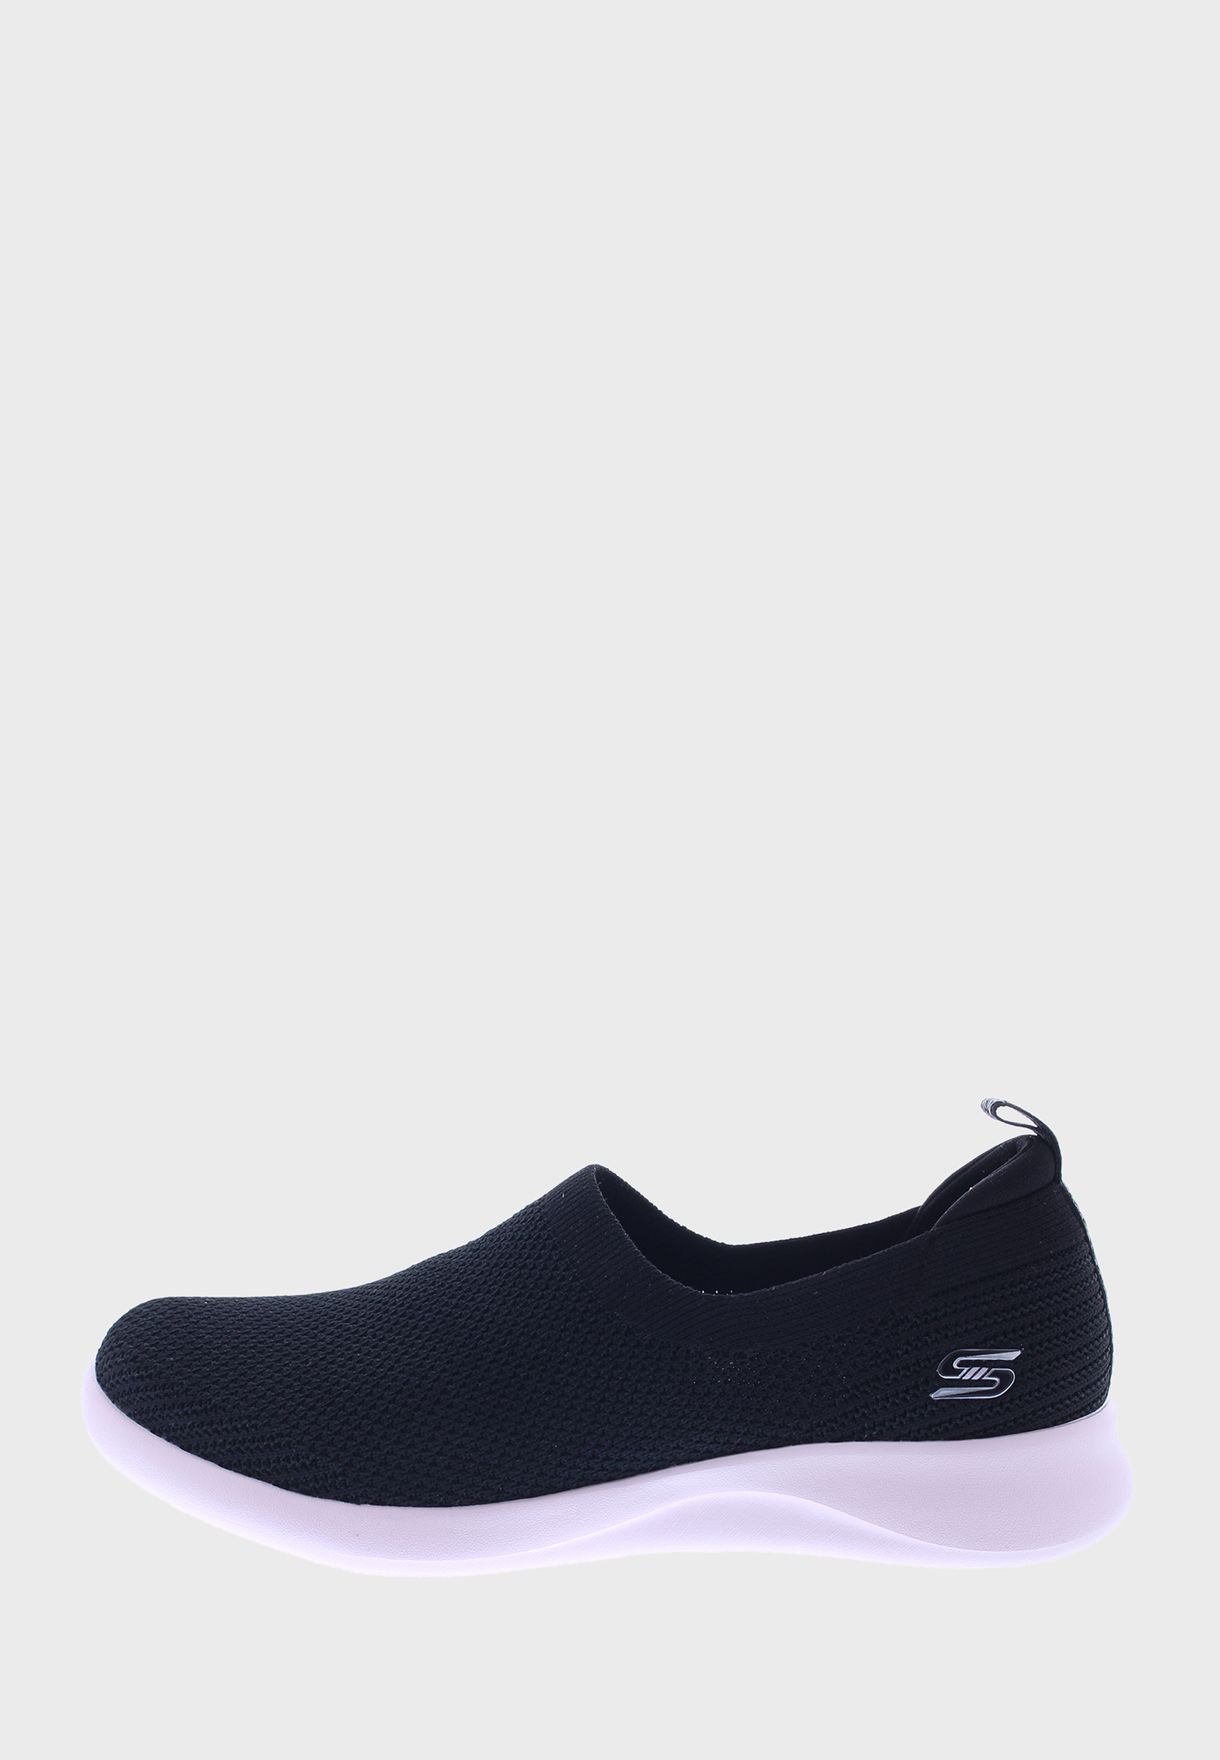 Skechers Spectrum Women’s Shoe 104174-BKLP → fitemirates.com